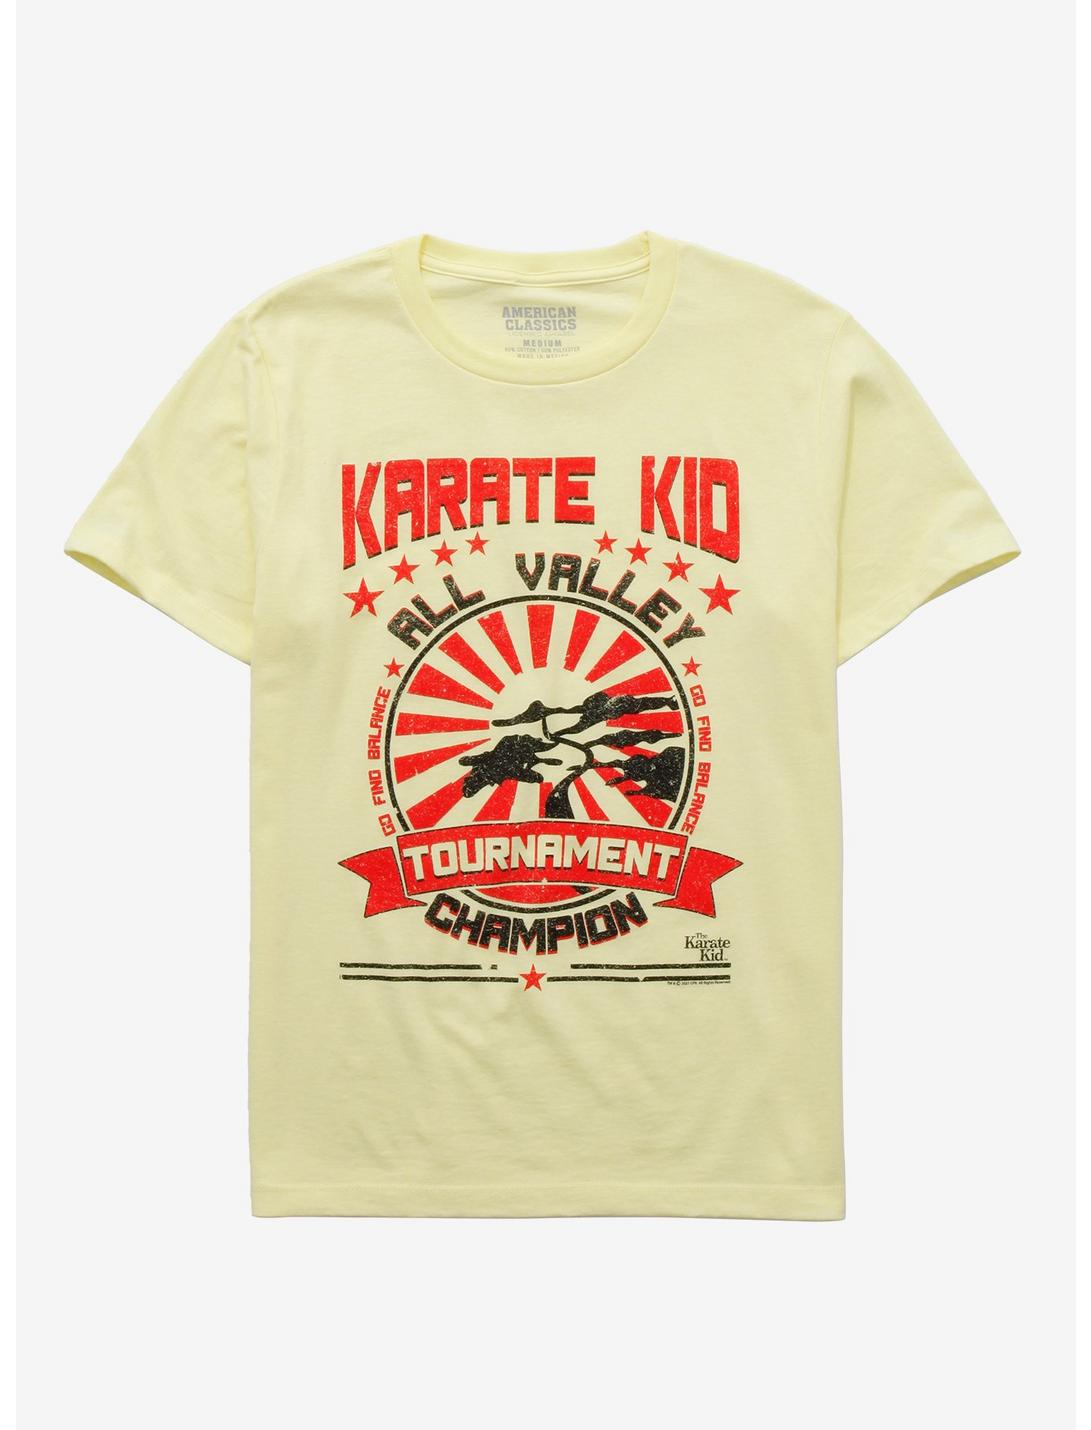 Cobra Kai All Valley Tournament Champion Girls T-Shirt, MULTI, hi-res